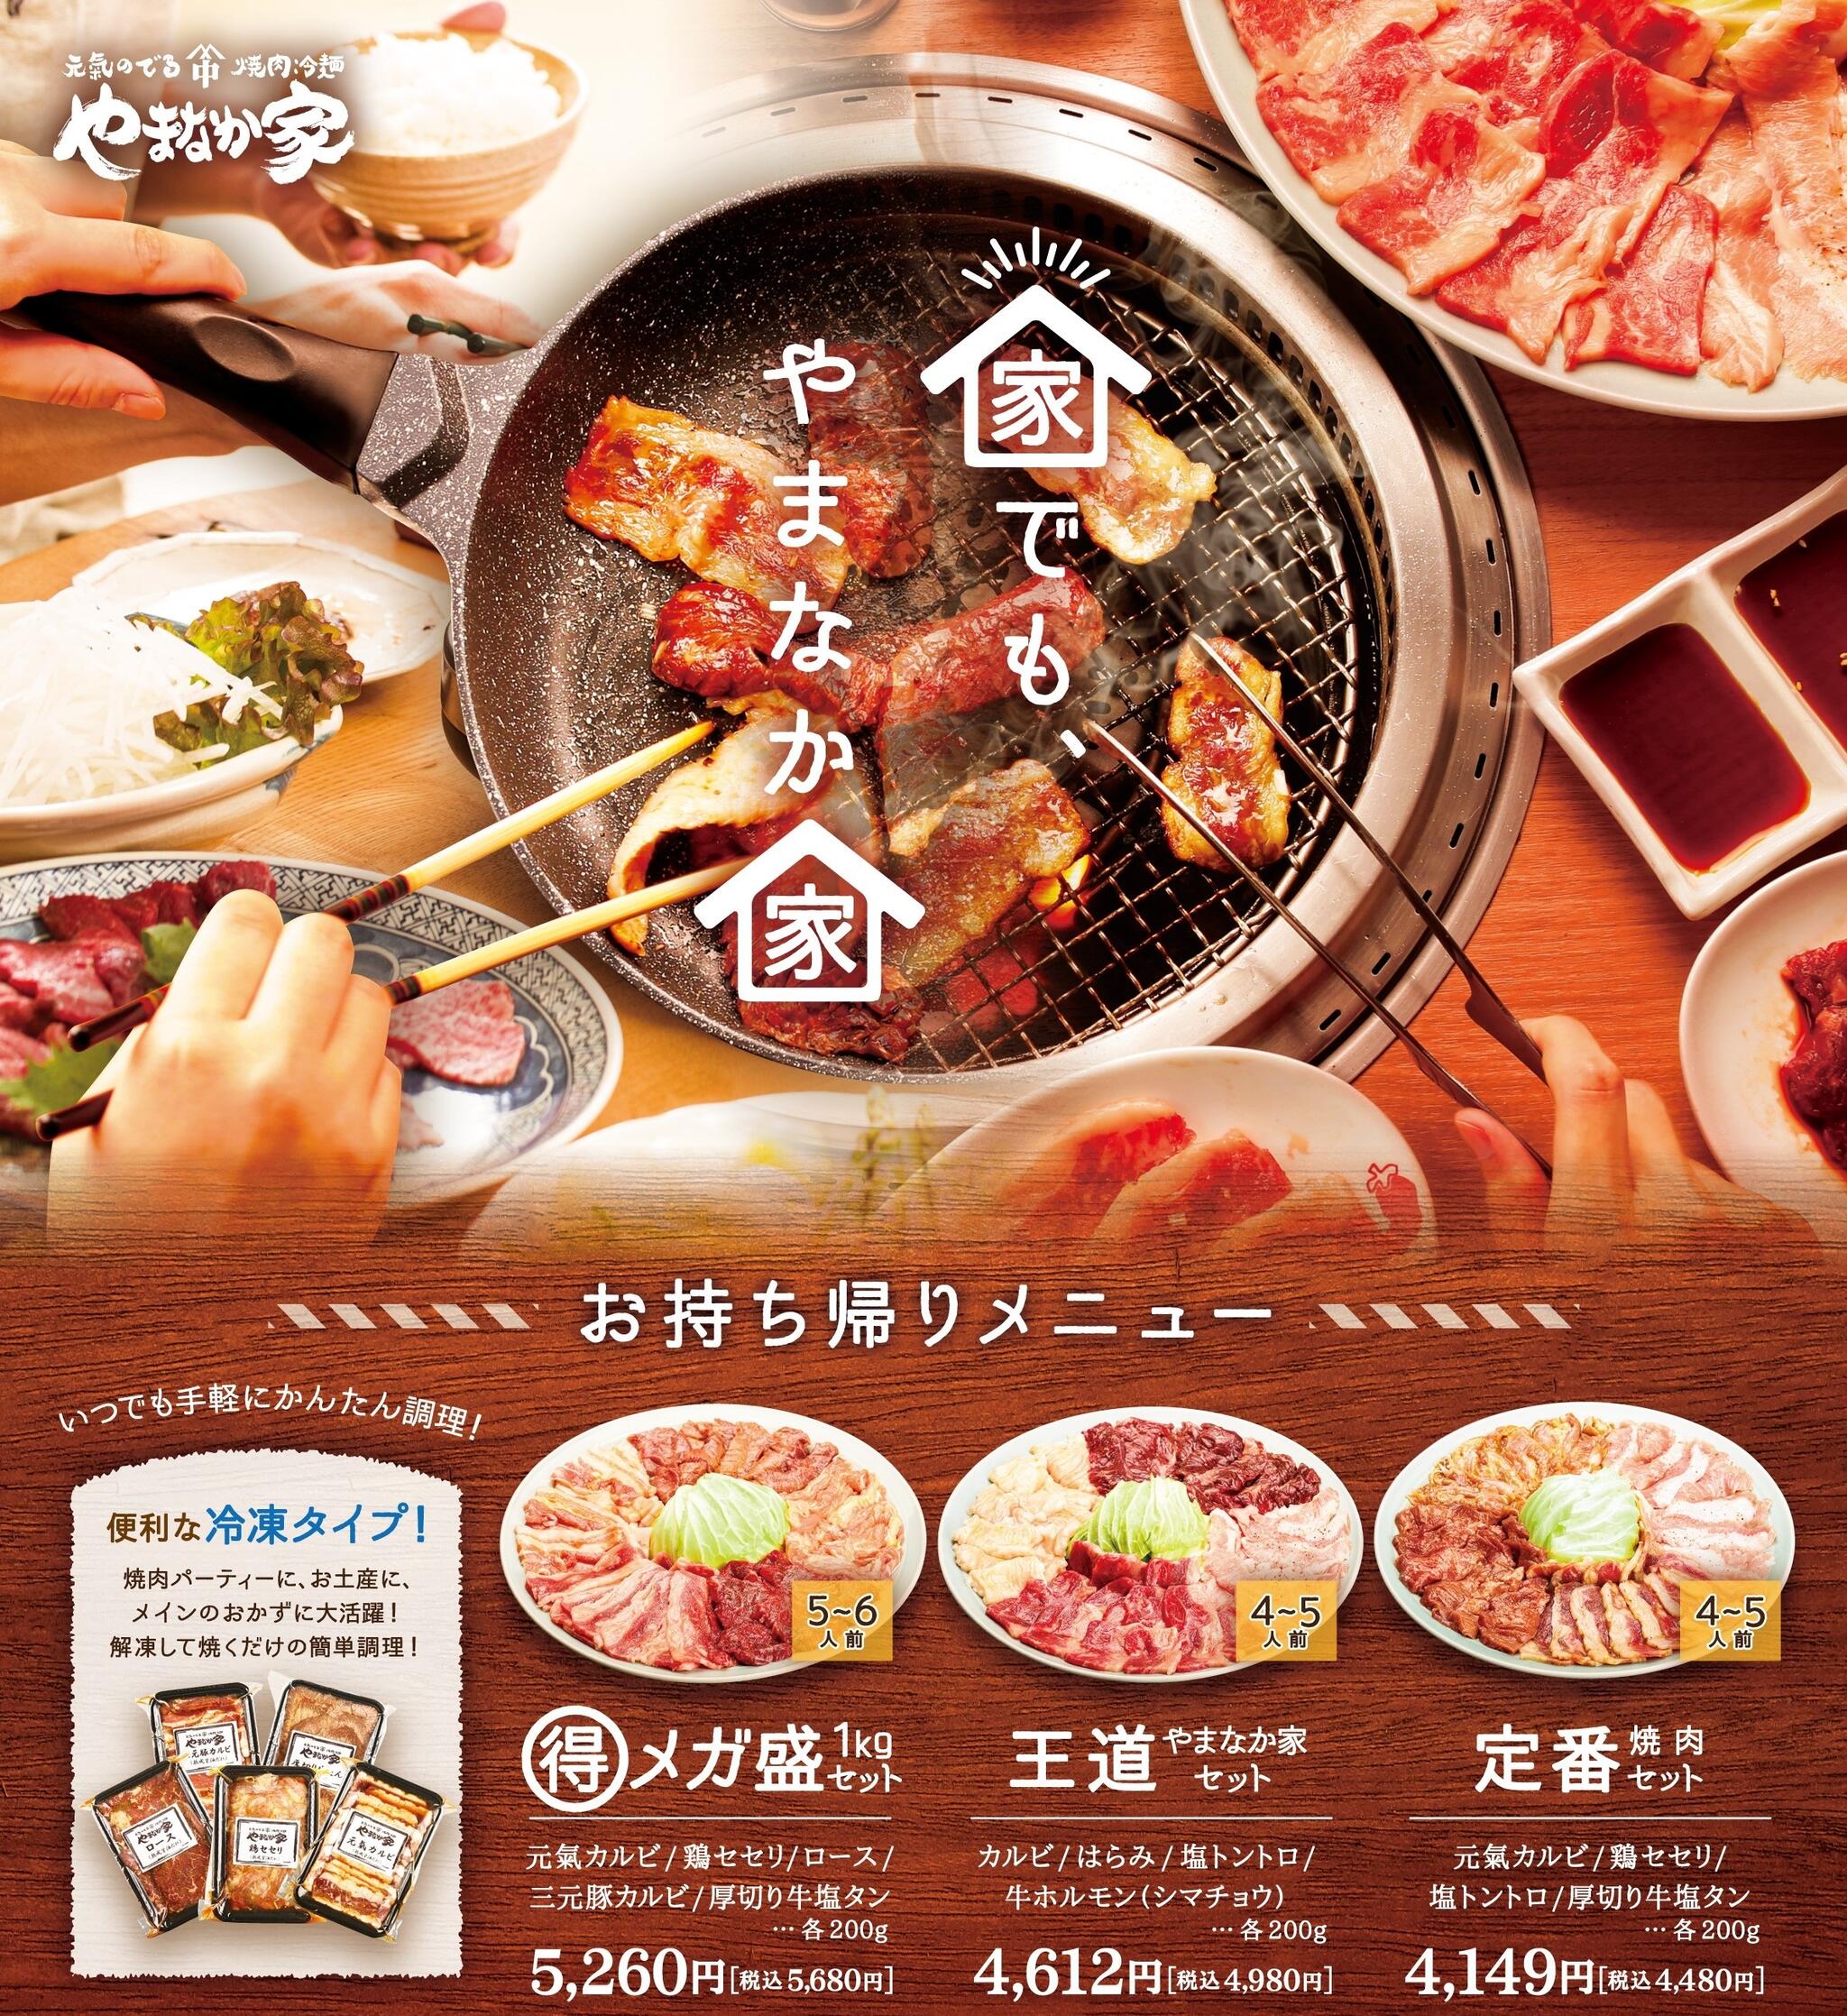 焼肉冷麺やまなか家 北上店からのお知らせ(🚩おうち焼肉店舗にて販売中🚩 )に関する写真